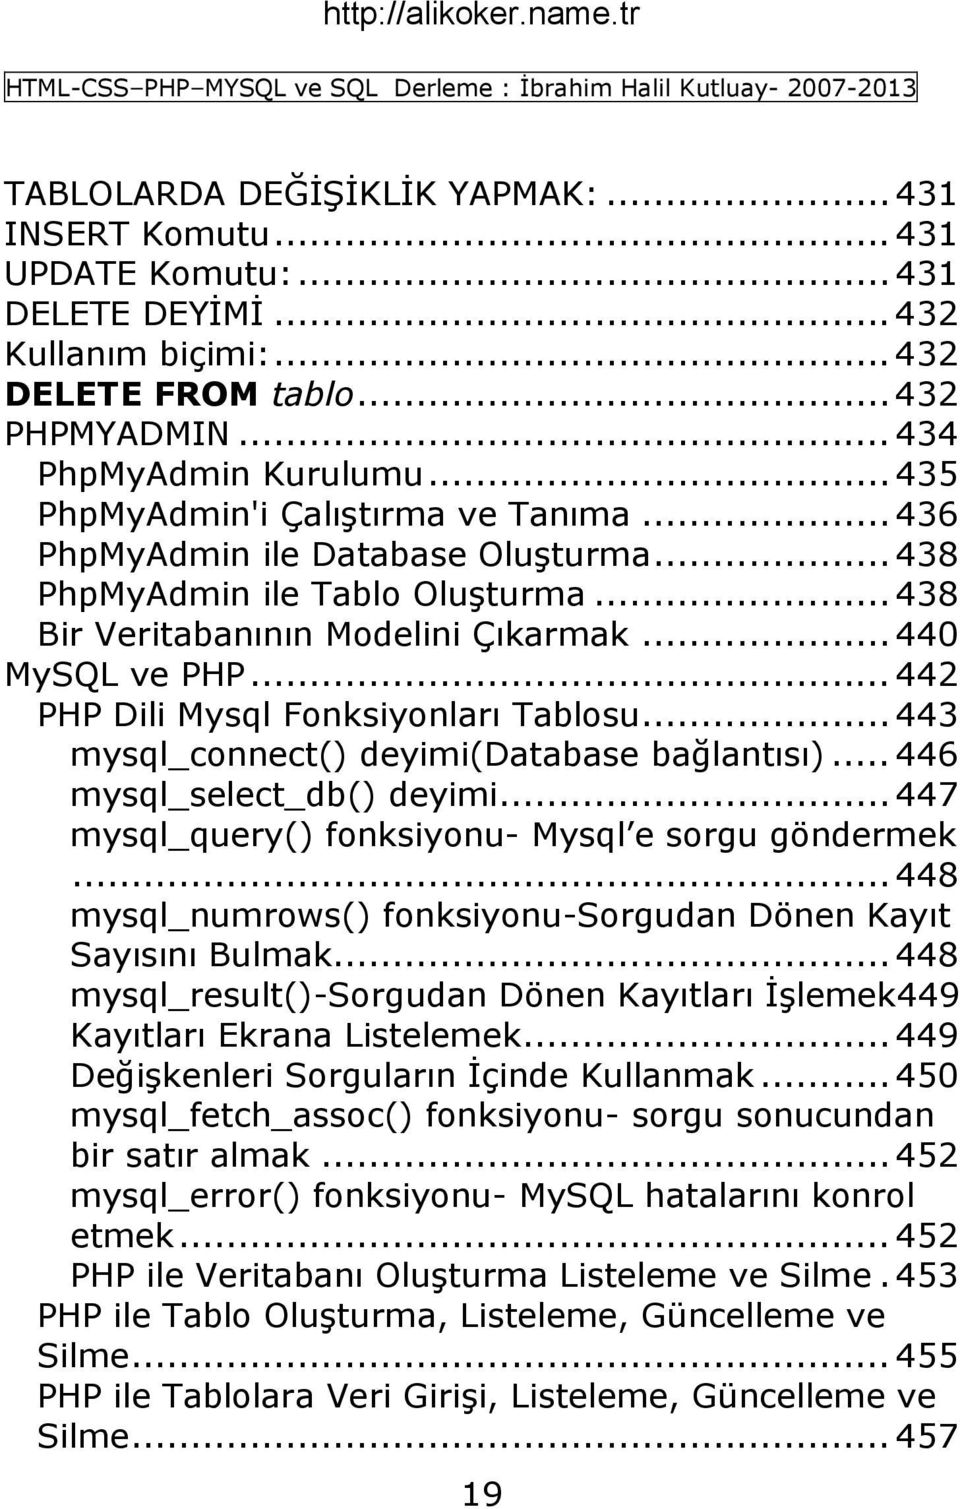 .. 442 PHP Dili Mysql Fonksiyonları Tablosu... 443 mysql_connect() deyimi(database bağlantısı)... 446 mysql_select_db() deyimi... 447 mysql_query() fonksiyonu- Mysql e sorgu göndermek.